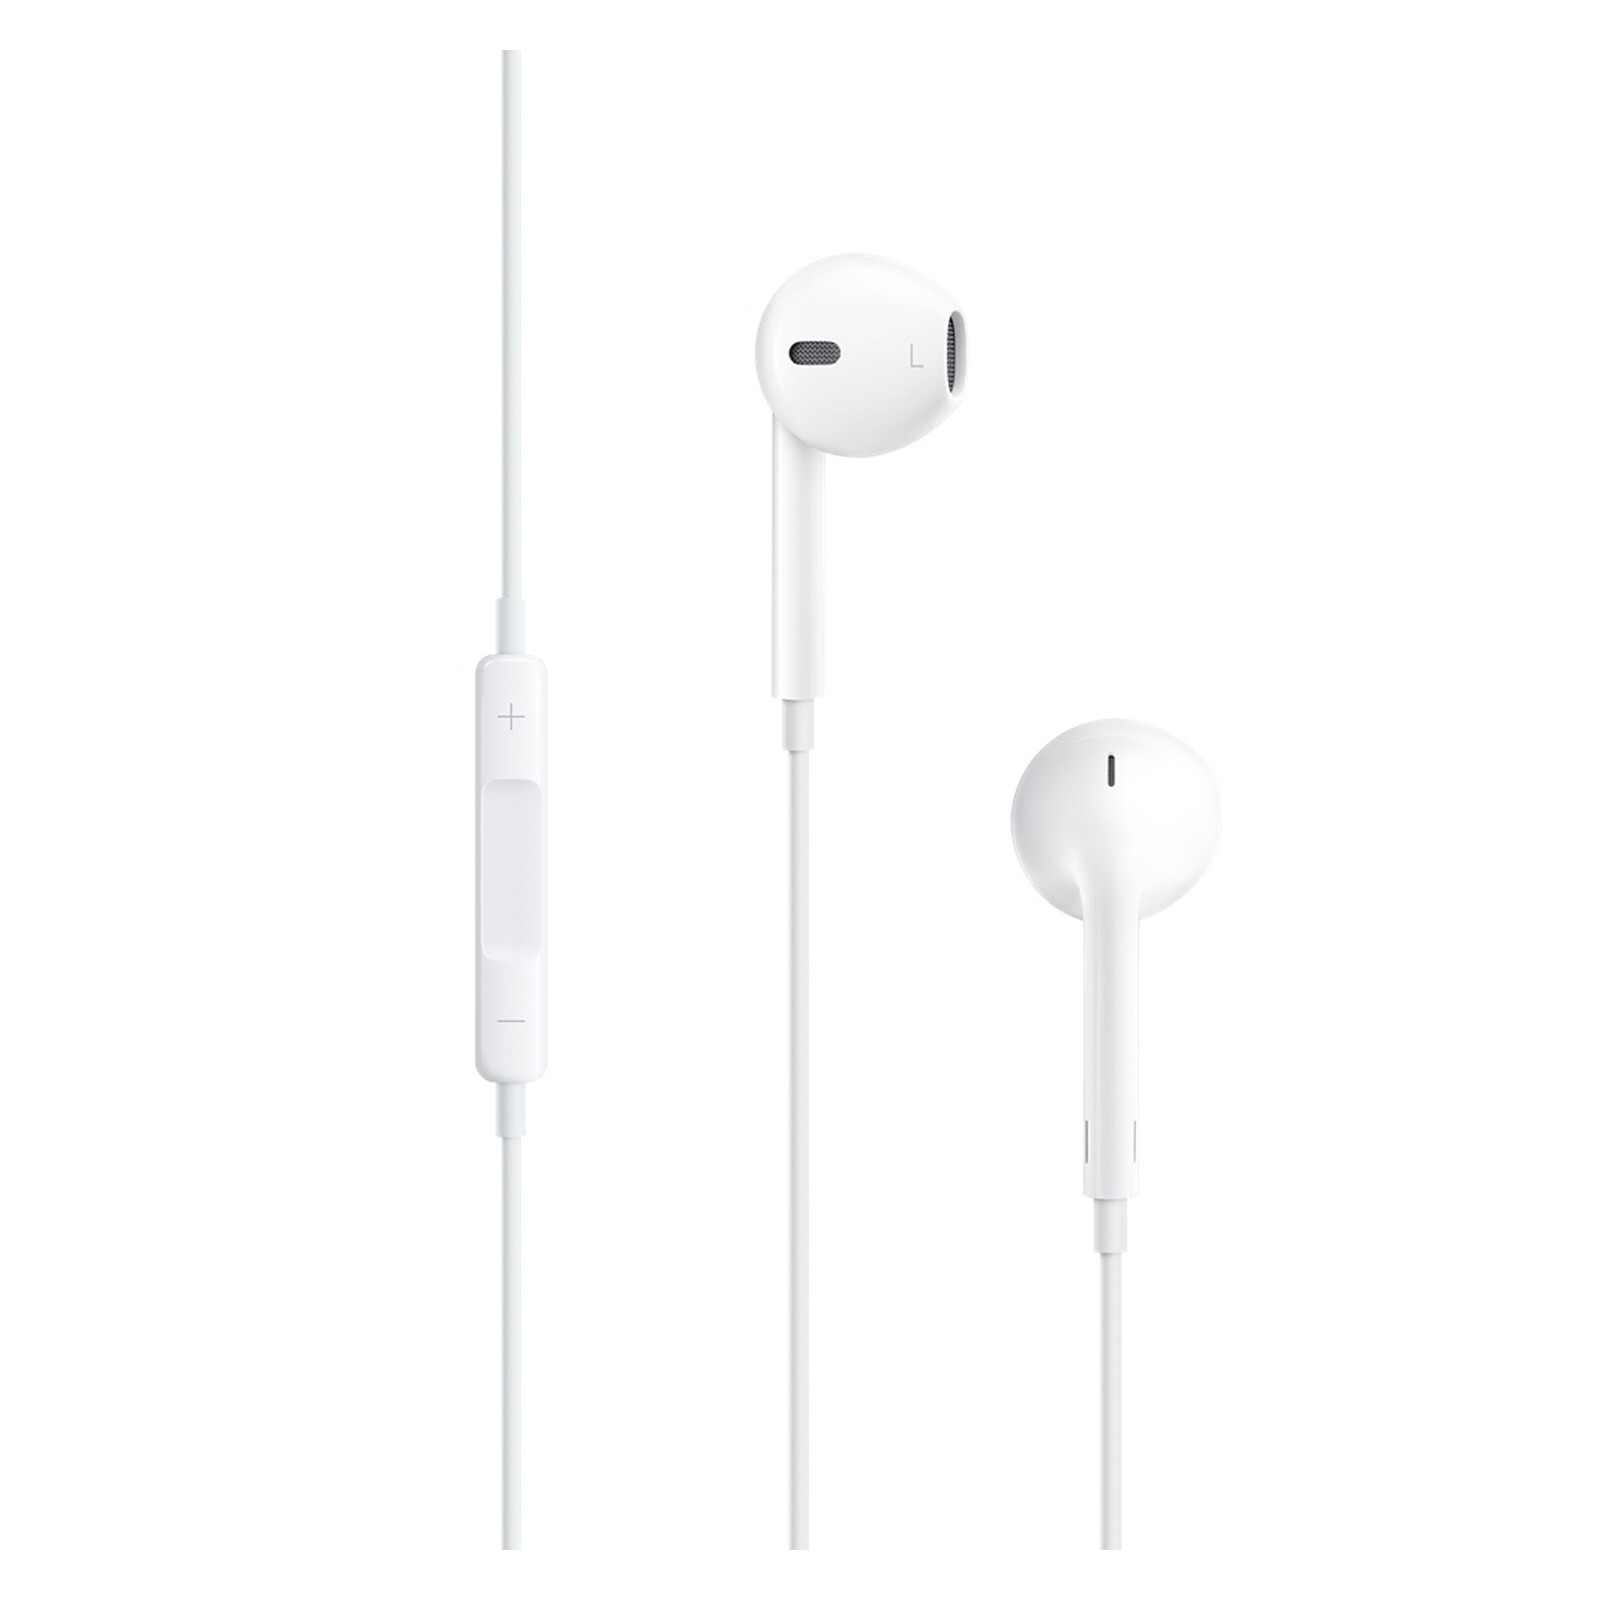 Apple EarPods mit Fernbedienung und Mikrofon